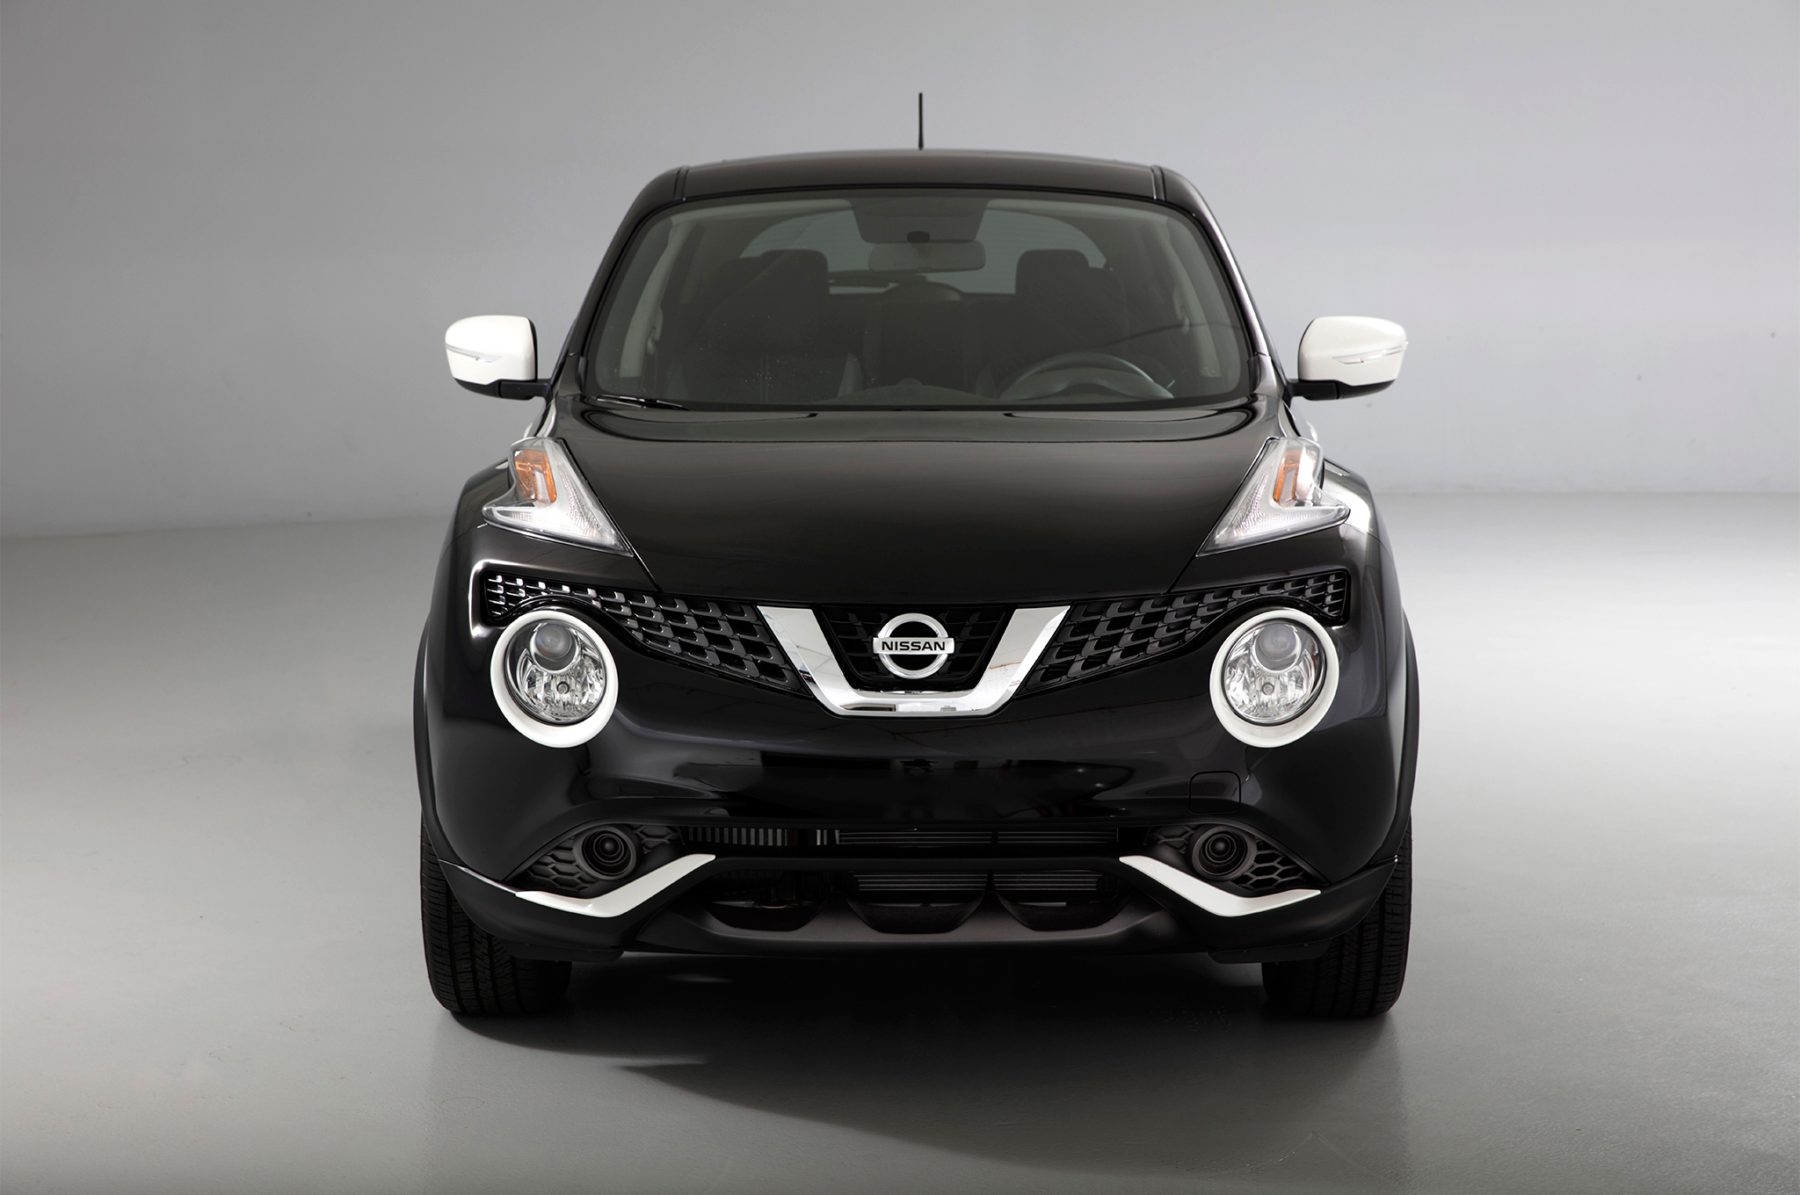 Nissan Juke Exterior High Resolution Wallpaper New Car